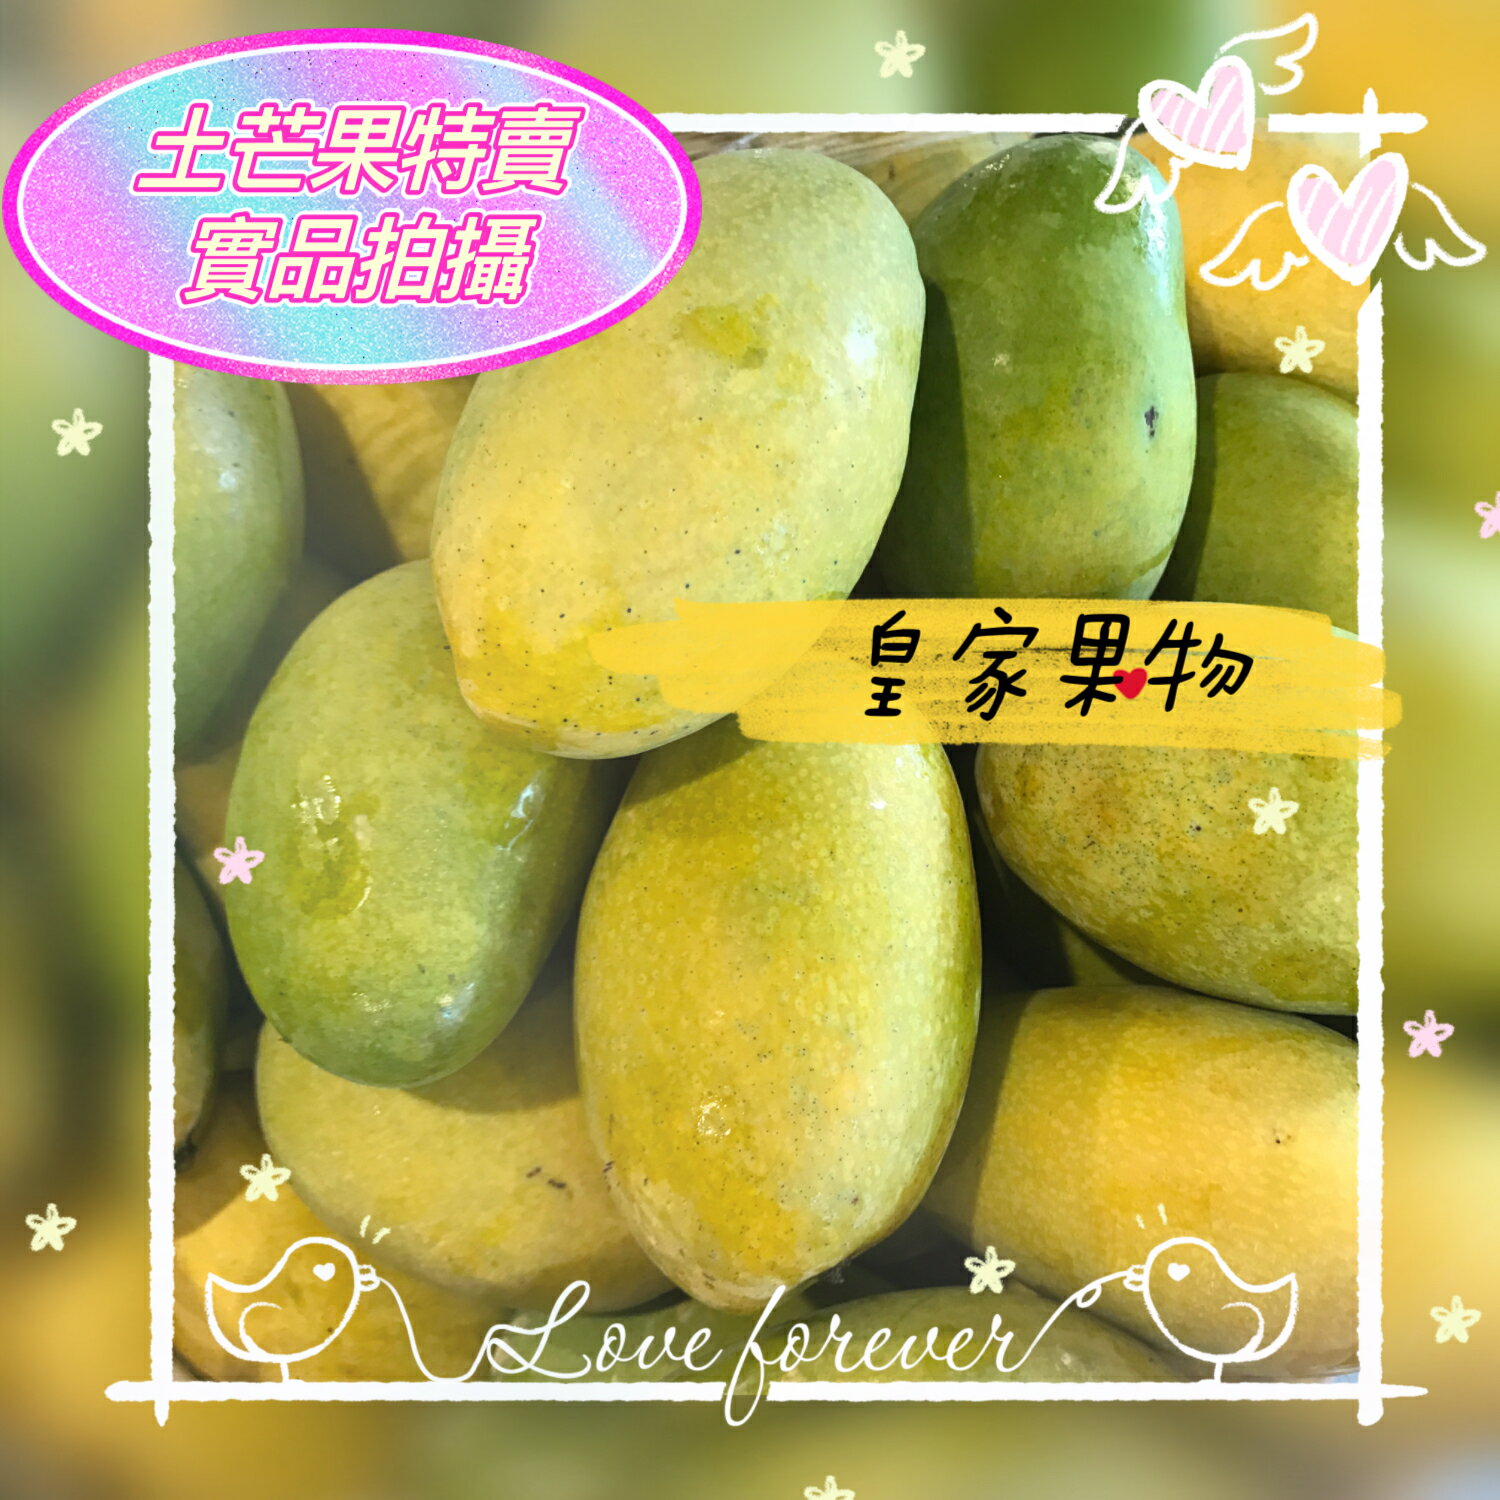 特選香甜土芒果中大顆5斤/10斤/一般箱【皇家果物】免運